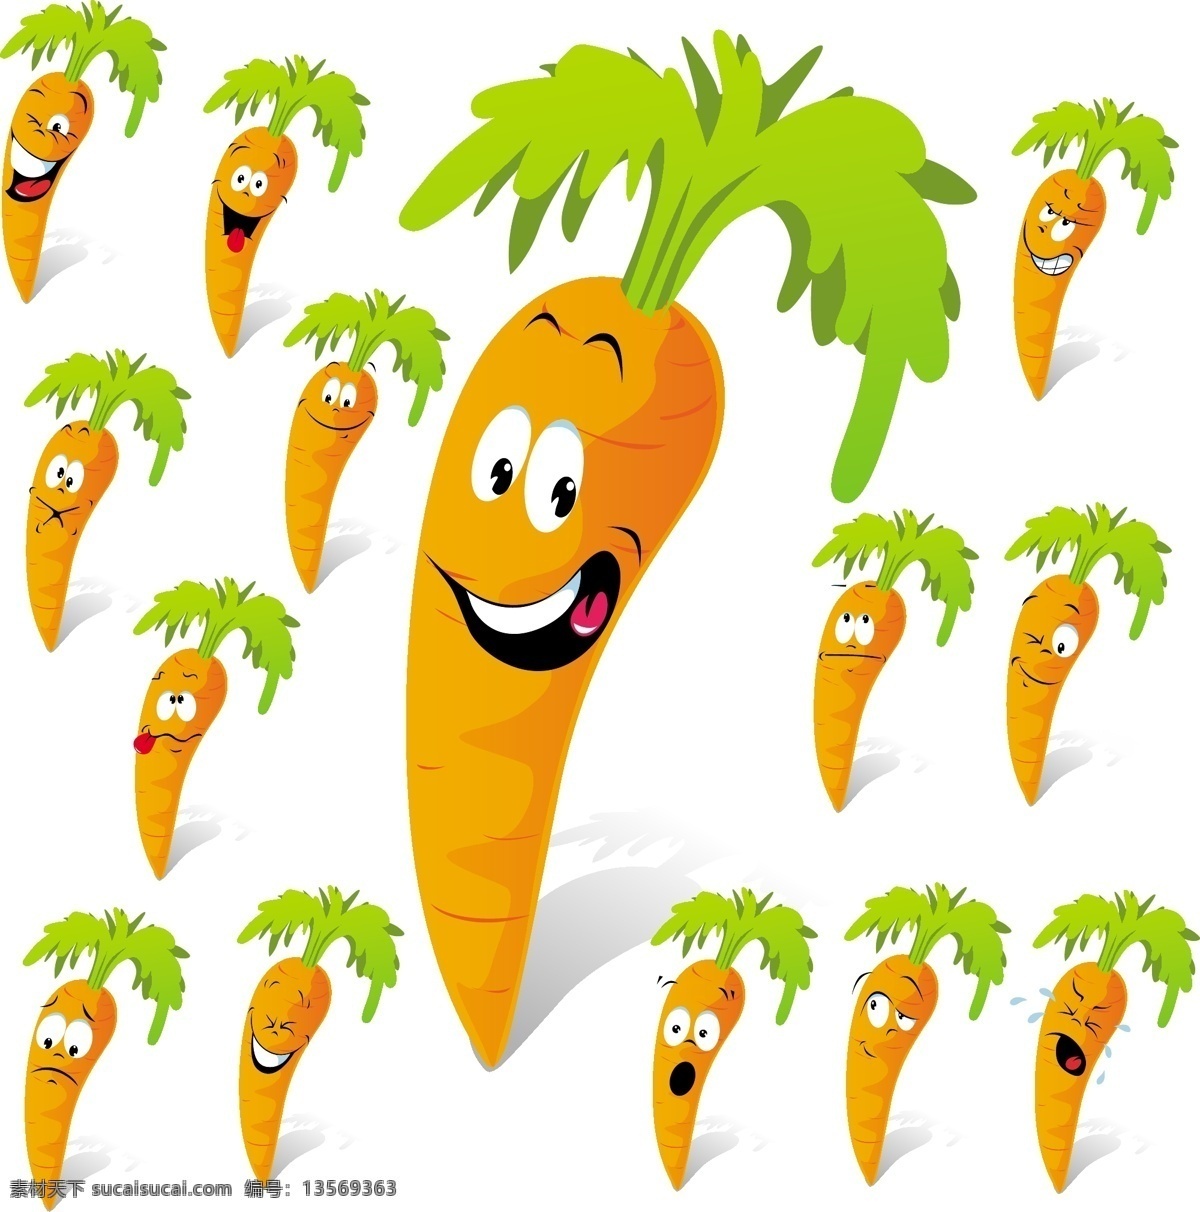 卡通萝卜表情 萝卜蔬菜 表情 笑脸 卡通 有趣 可爱 滑稽 幽默 手绘 矢量 蔬菜水果 卡通设计